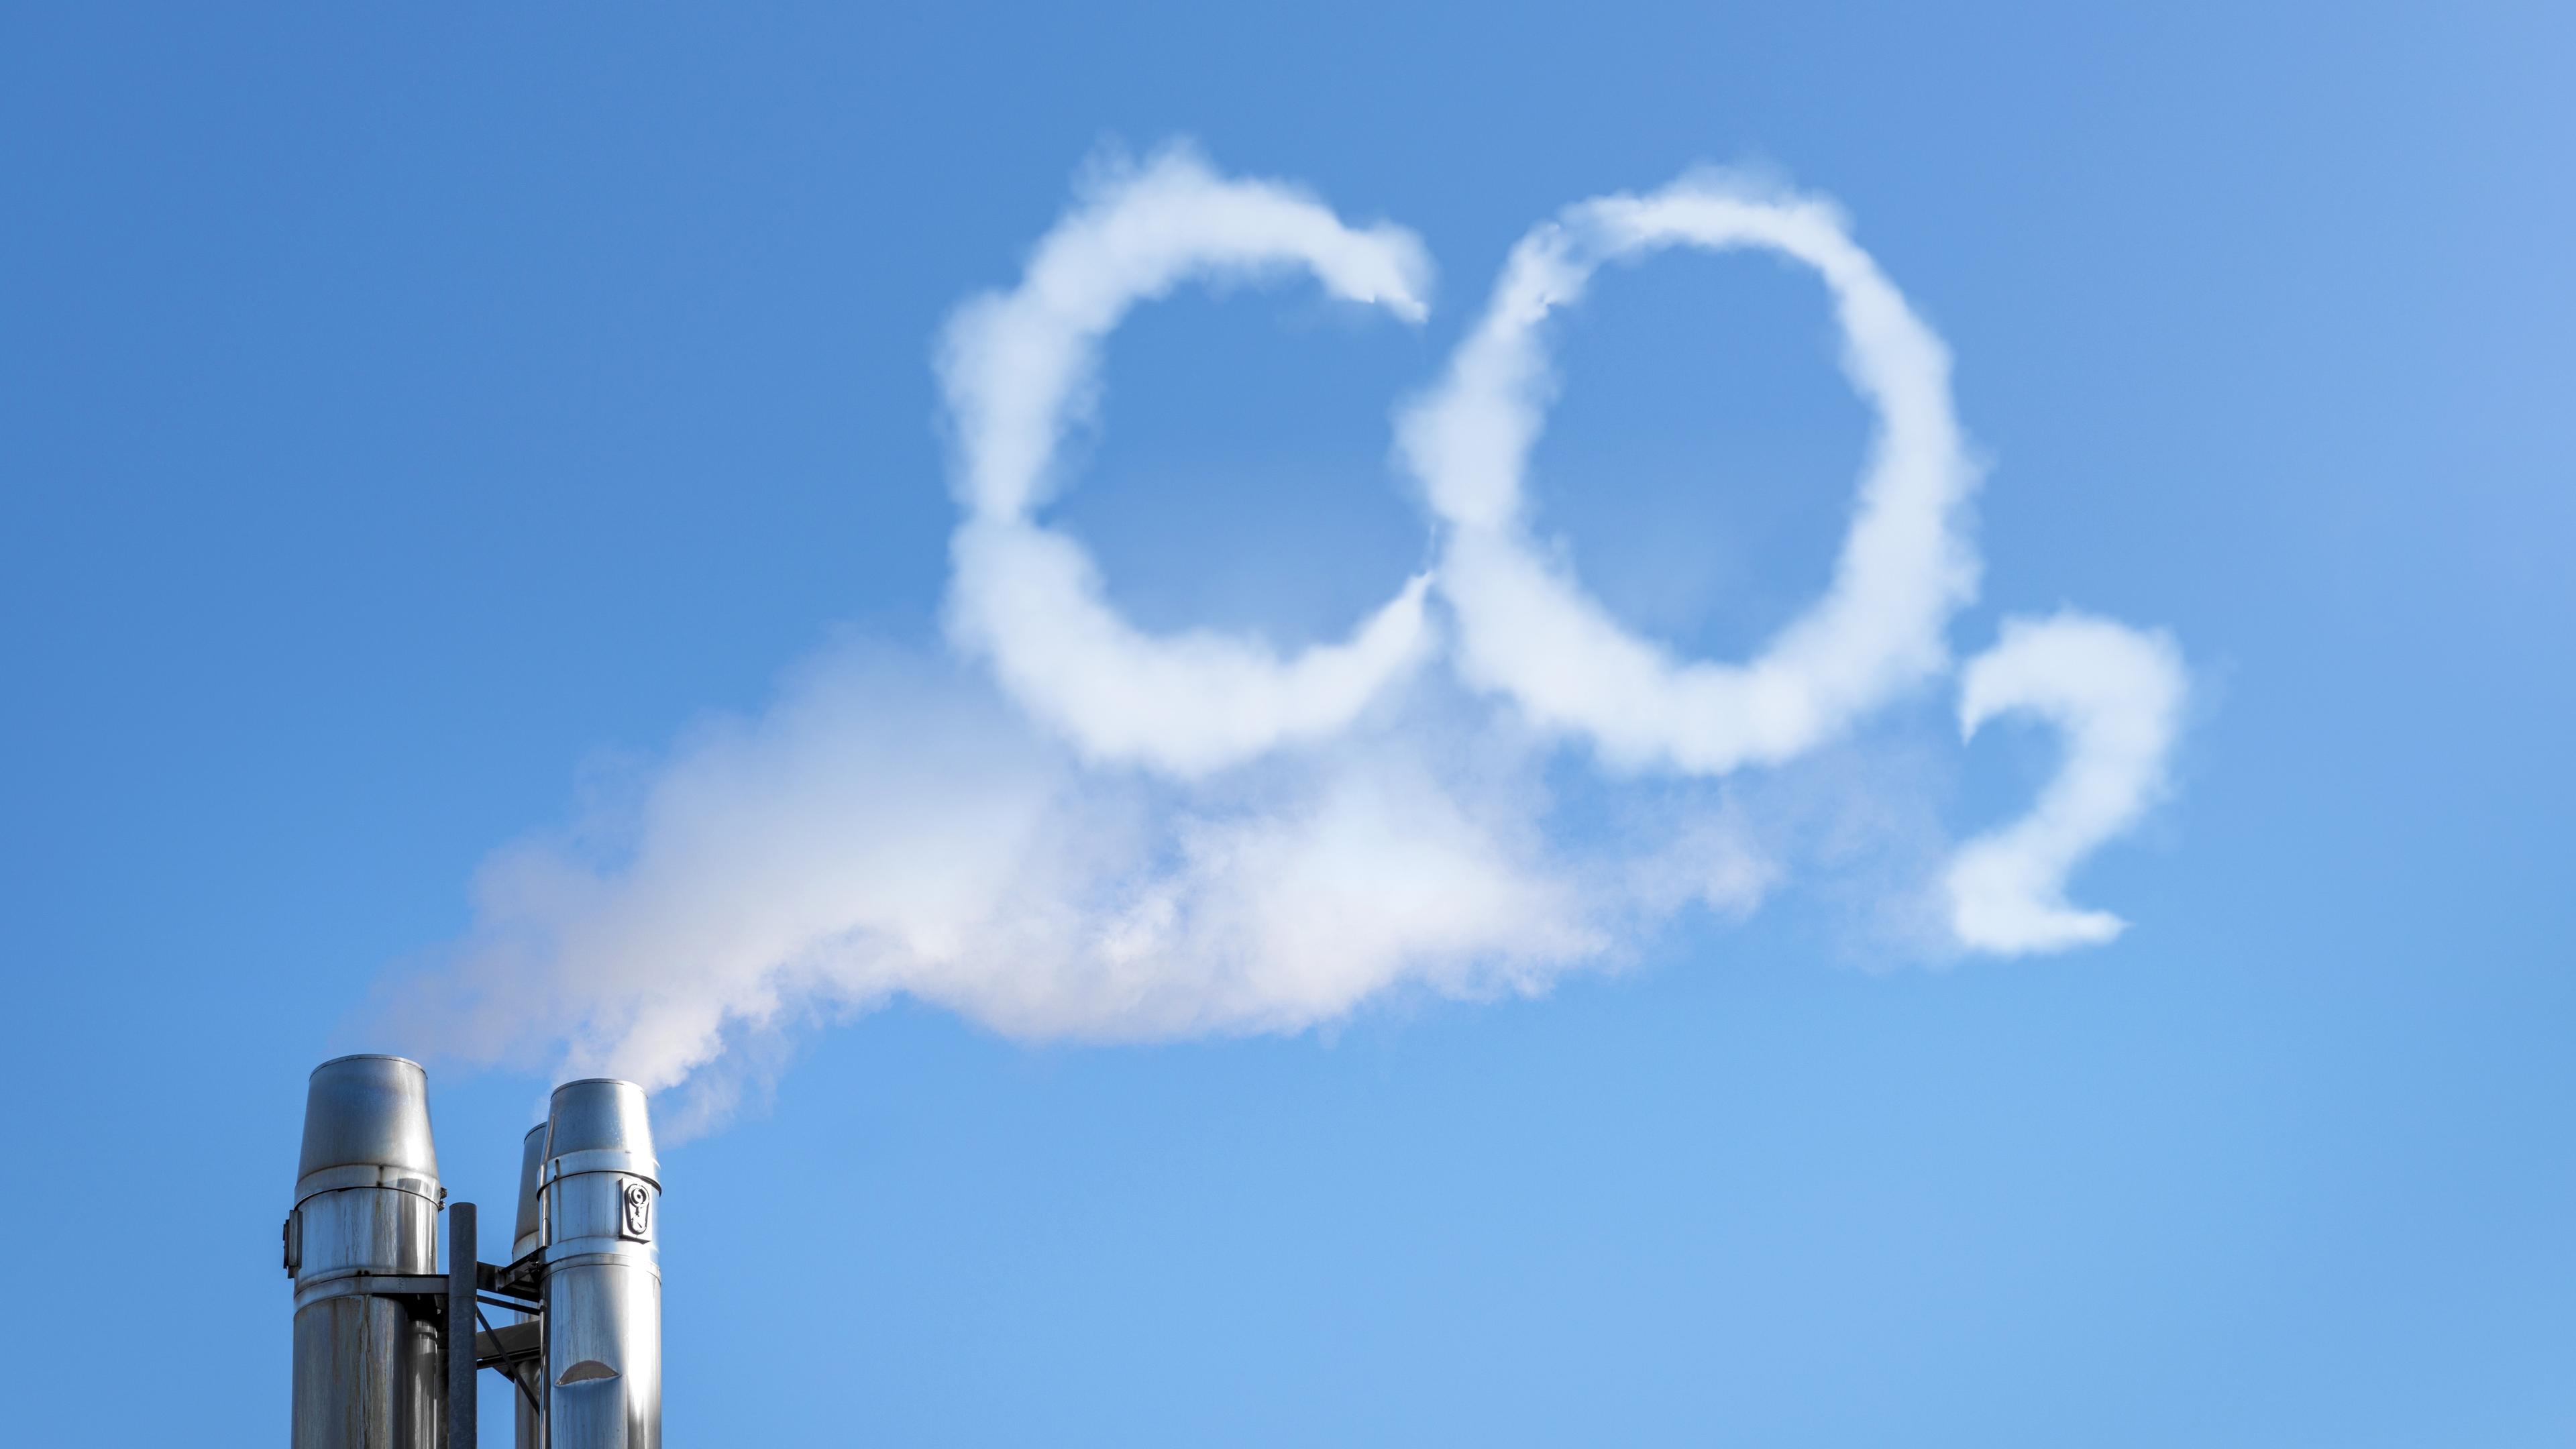 Är det bättre att sätta ett pris på koldioxiden än att försöka definiera politiska åtgärder? Foto: Shutterstock